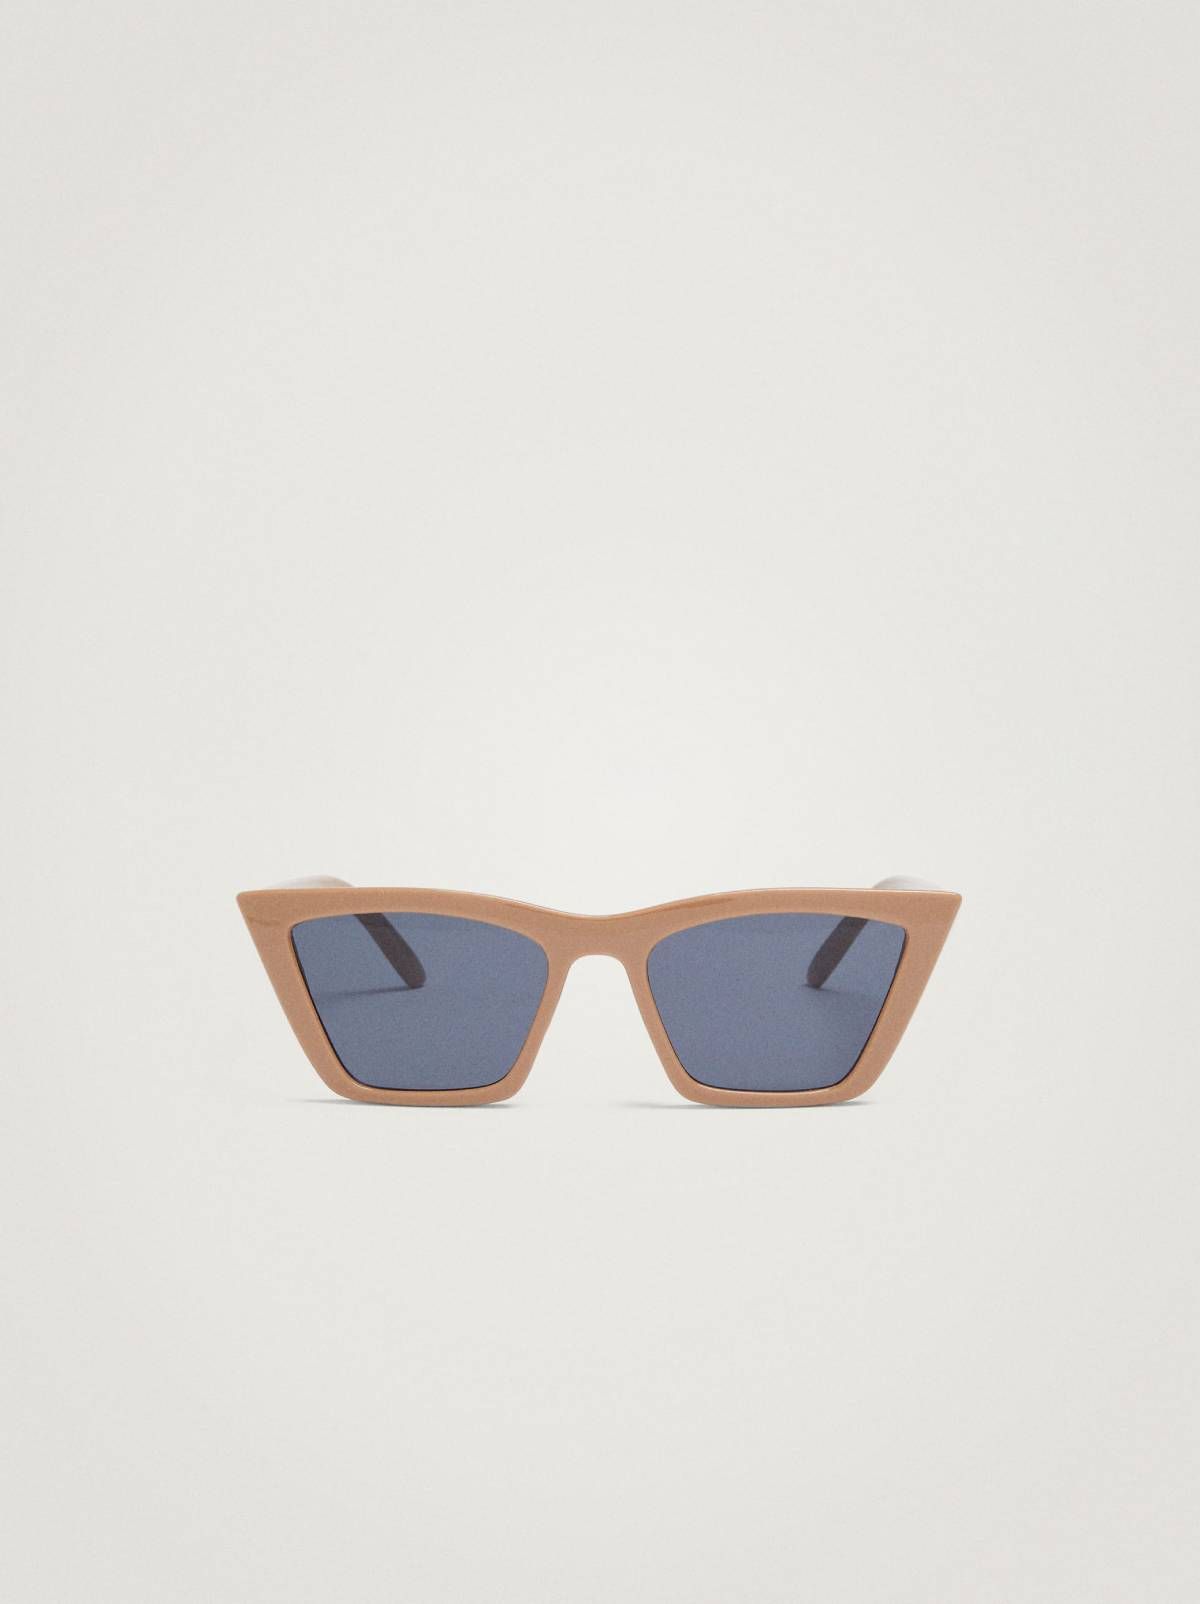 Estas son las gafas de sol más vendidas de la temporada - Woman